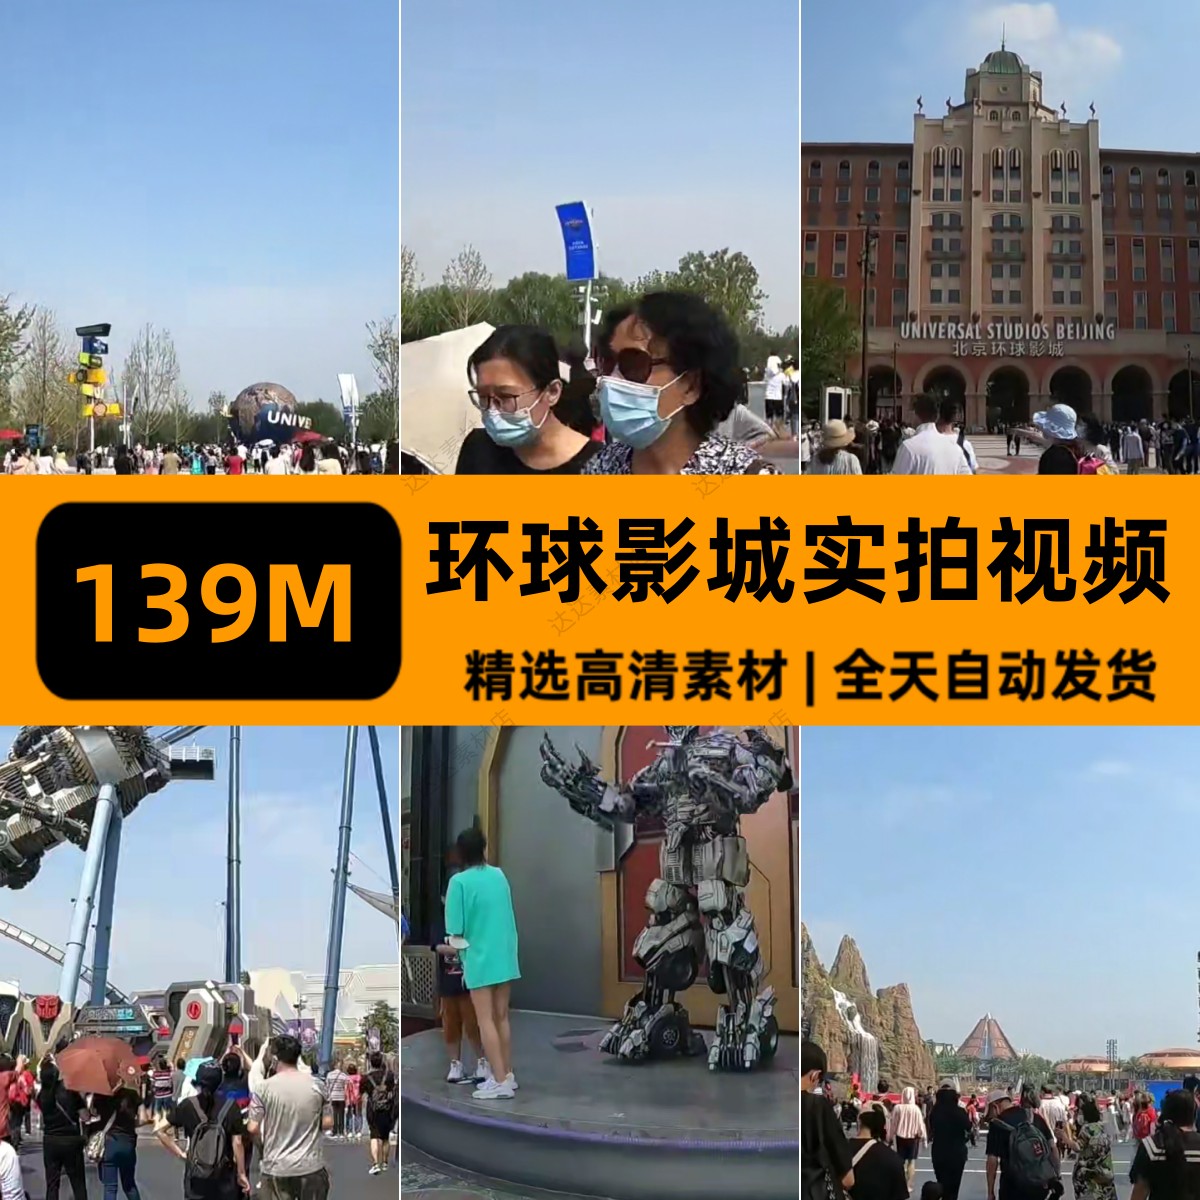 北京环球影城主题乐园景点旅游随拍高清实拍剪辑视频素材自媒体